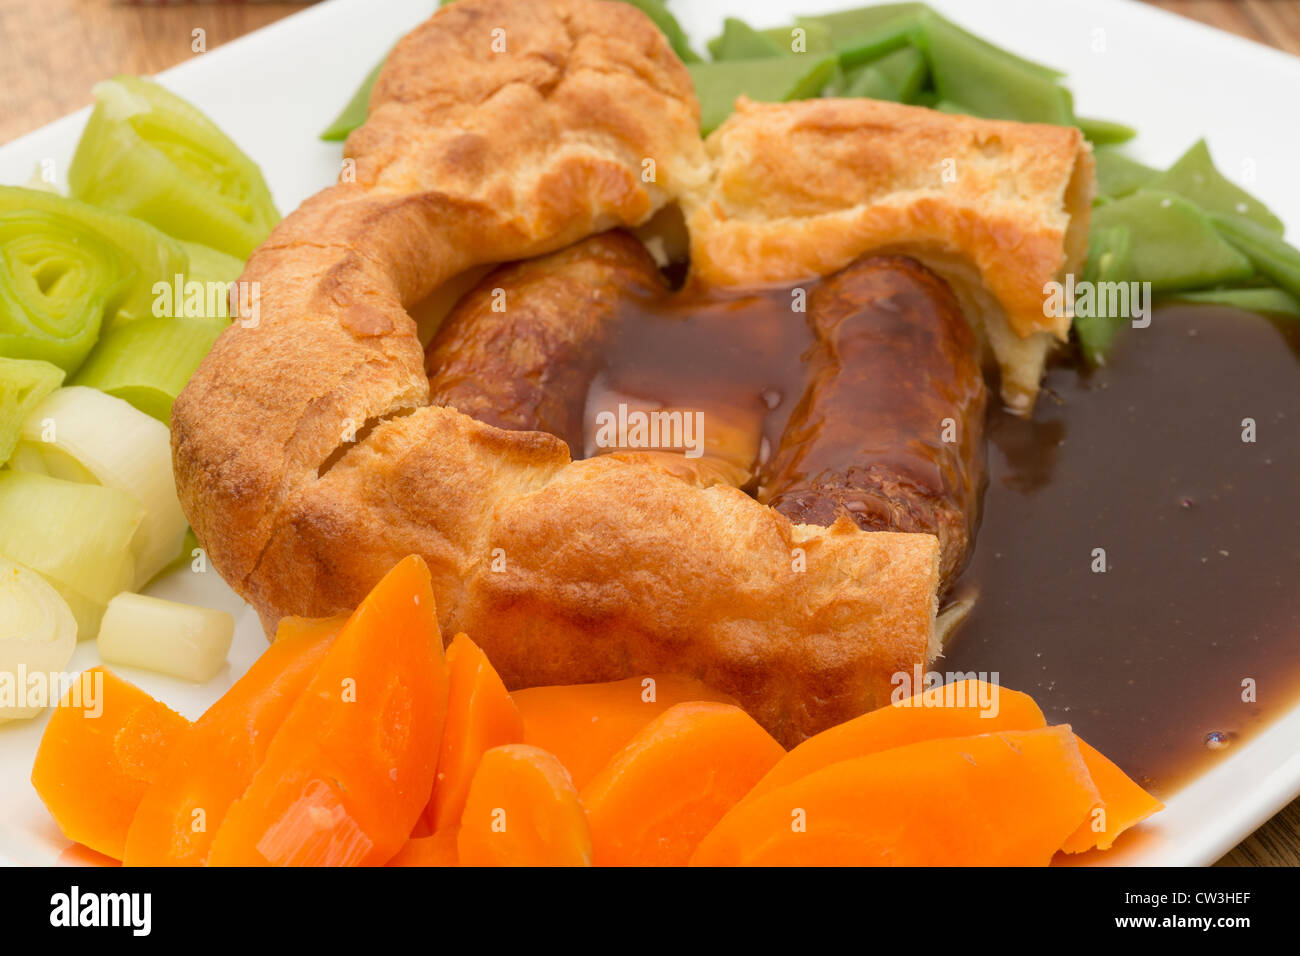 Ein klassisches britisches Gericht der Kröte in der Bohrung, die Würstchen aus Schweinefleisch gekocht in Teig dann mit Gemüse und dicken Soße serviert Stockfoto